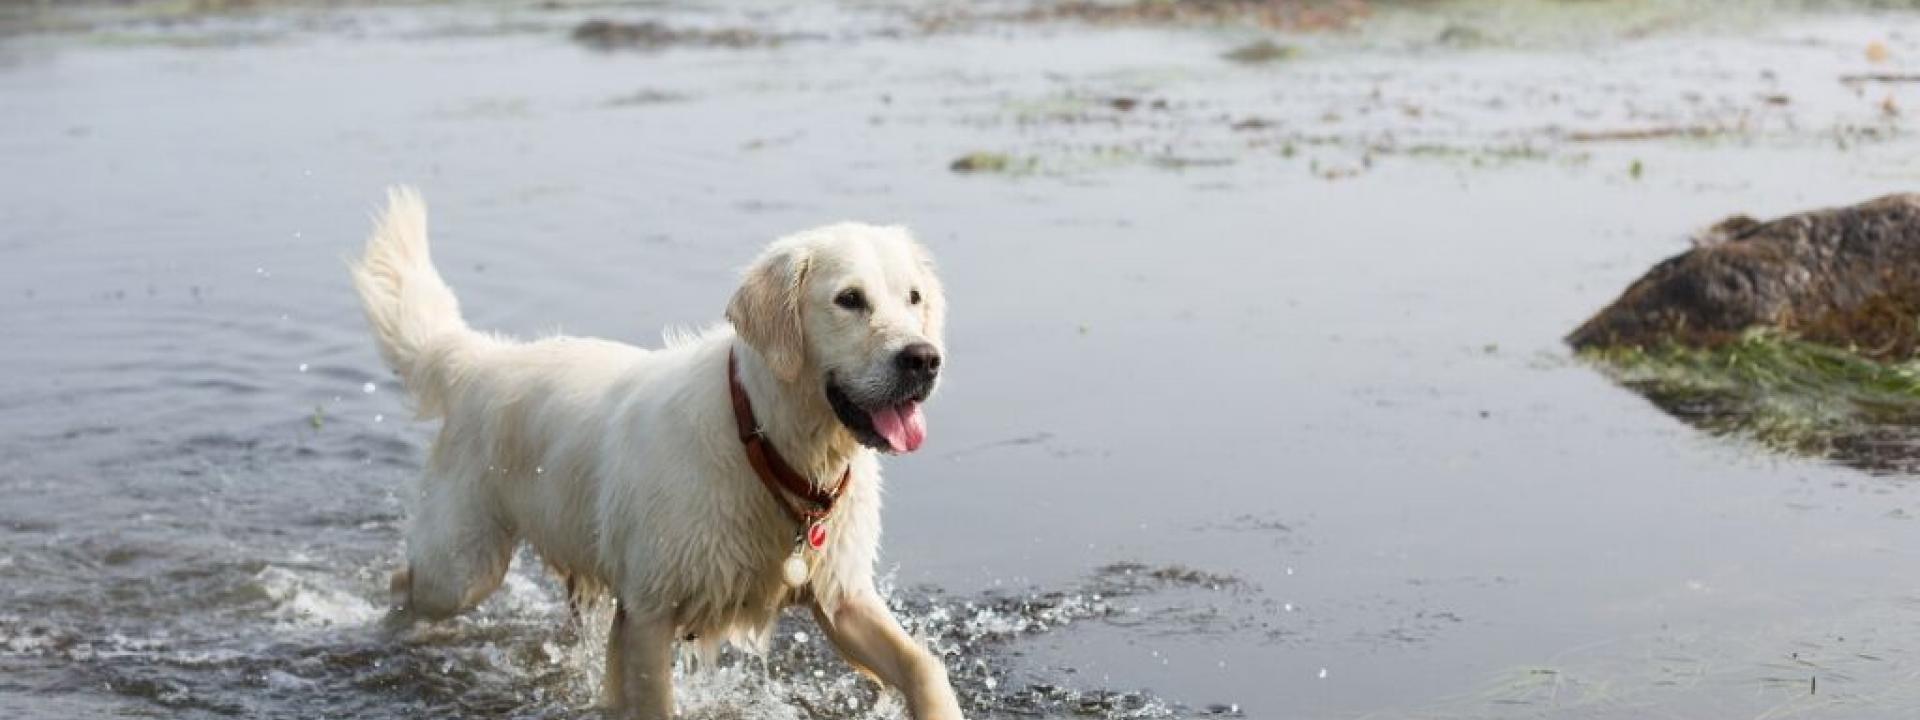 dogs-algae-blooms-dangers.jpg